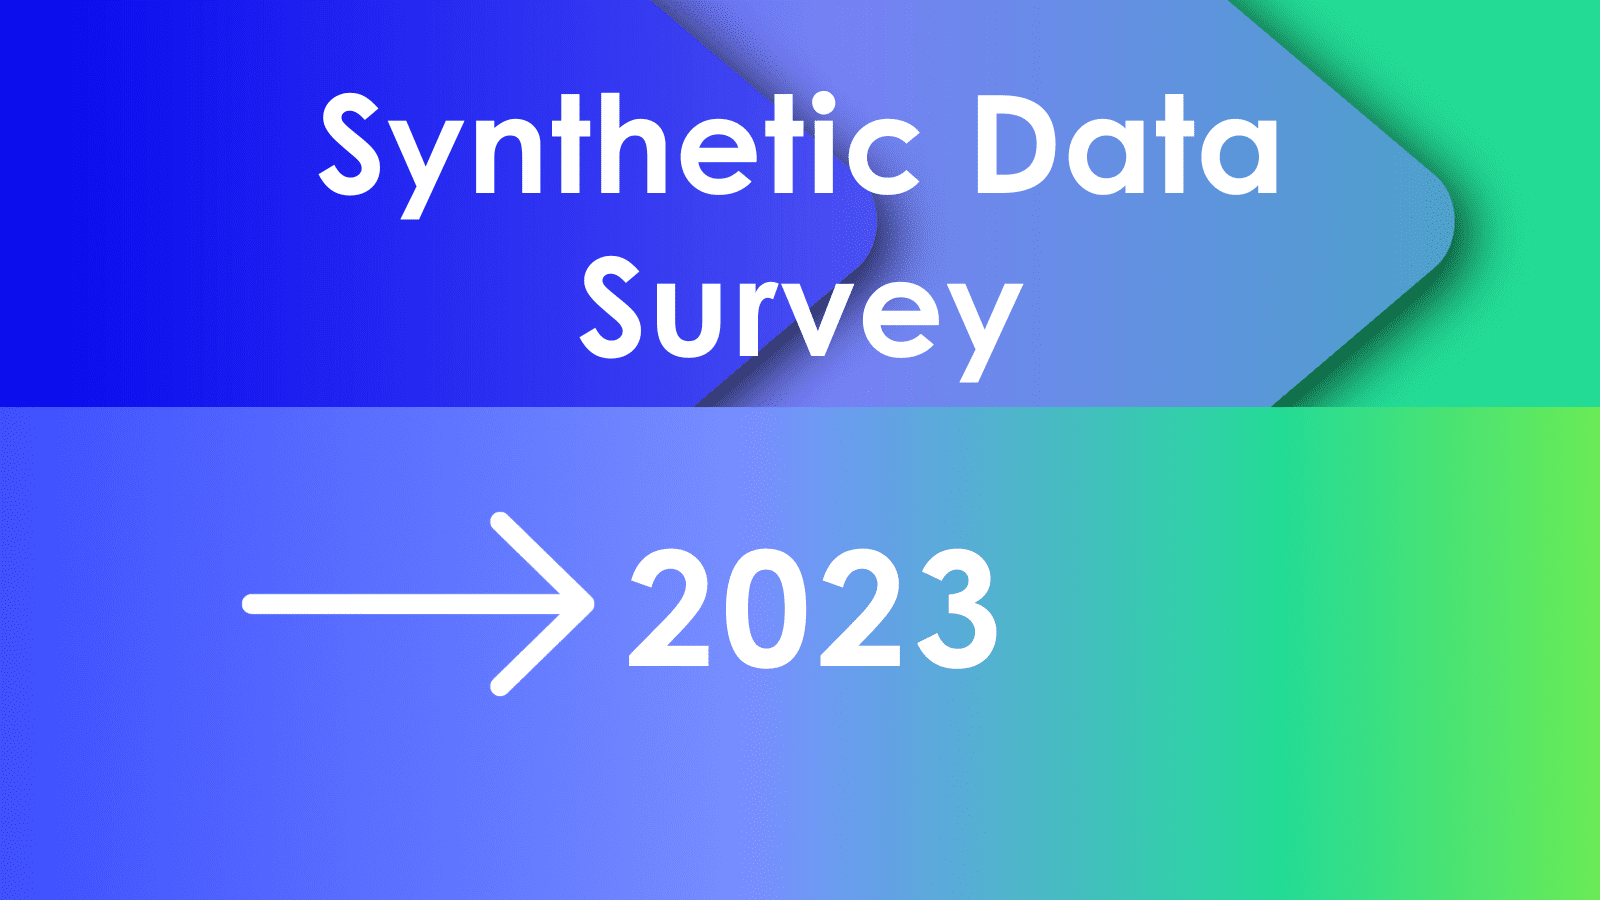 In den meisten Unternehmen mangelt es stark an Datenzugriff und 71 % glauben, dass synthetische Daten hilfreich sein können